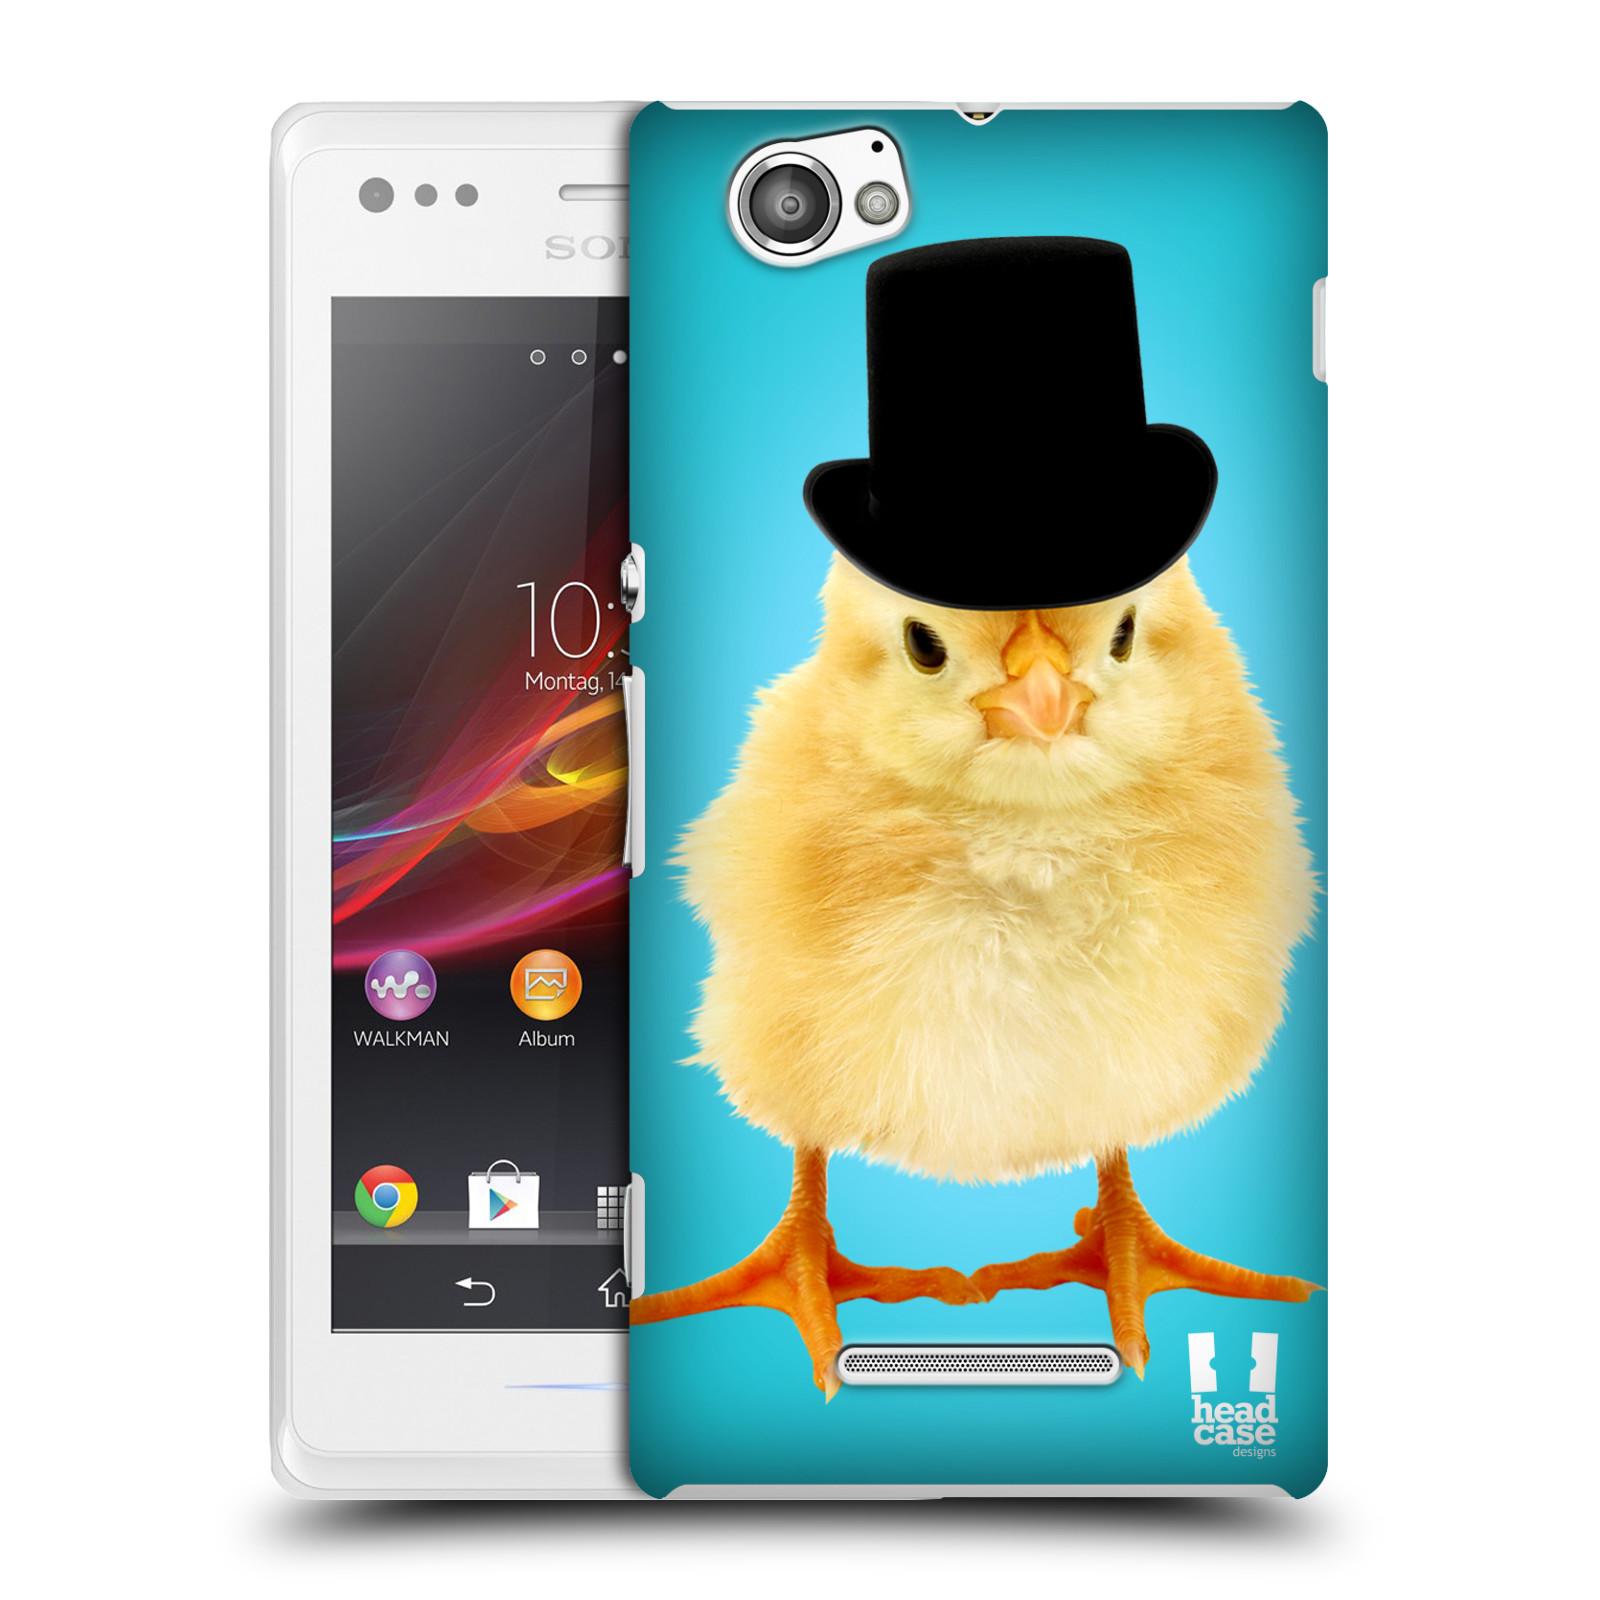 HEAD CASE plastový obal na mobil Sony Xperia M vzor Legrační zvířátka Mr. kuřátko